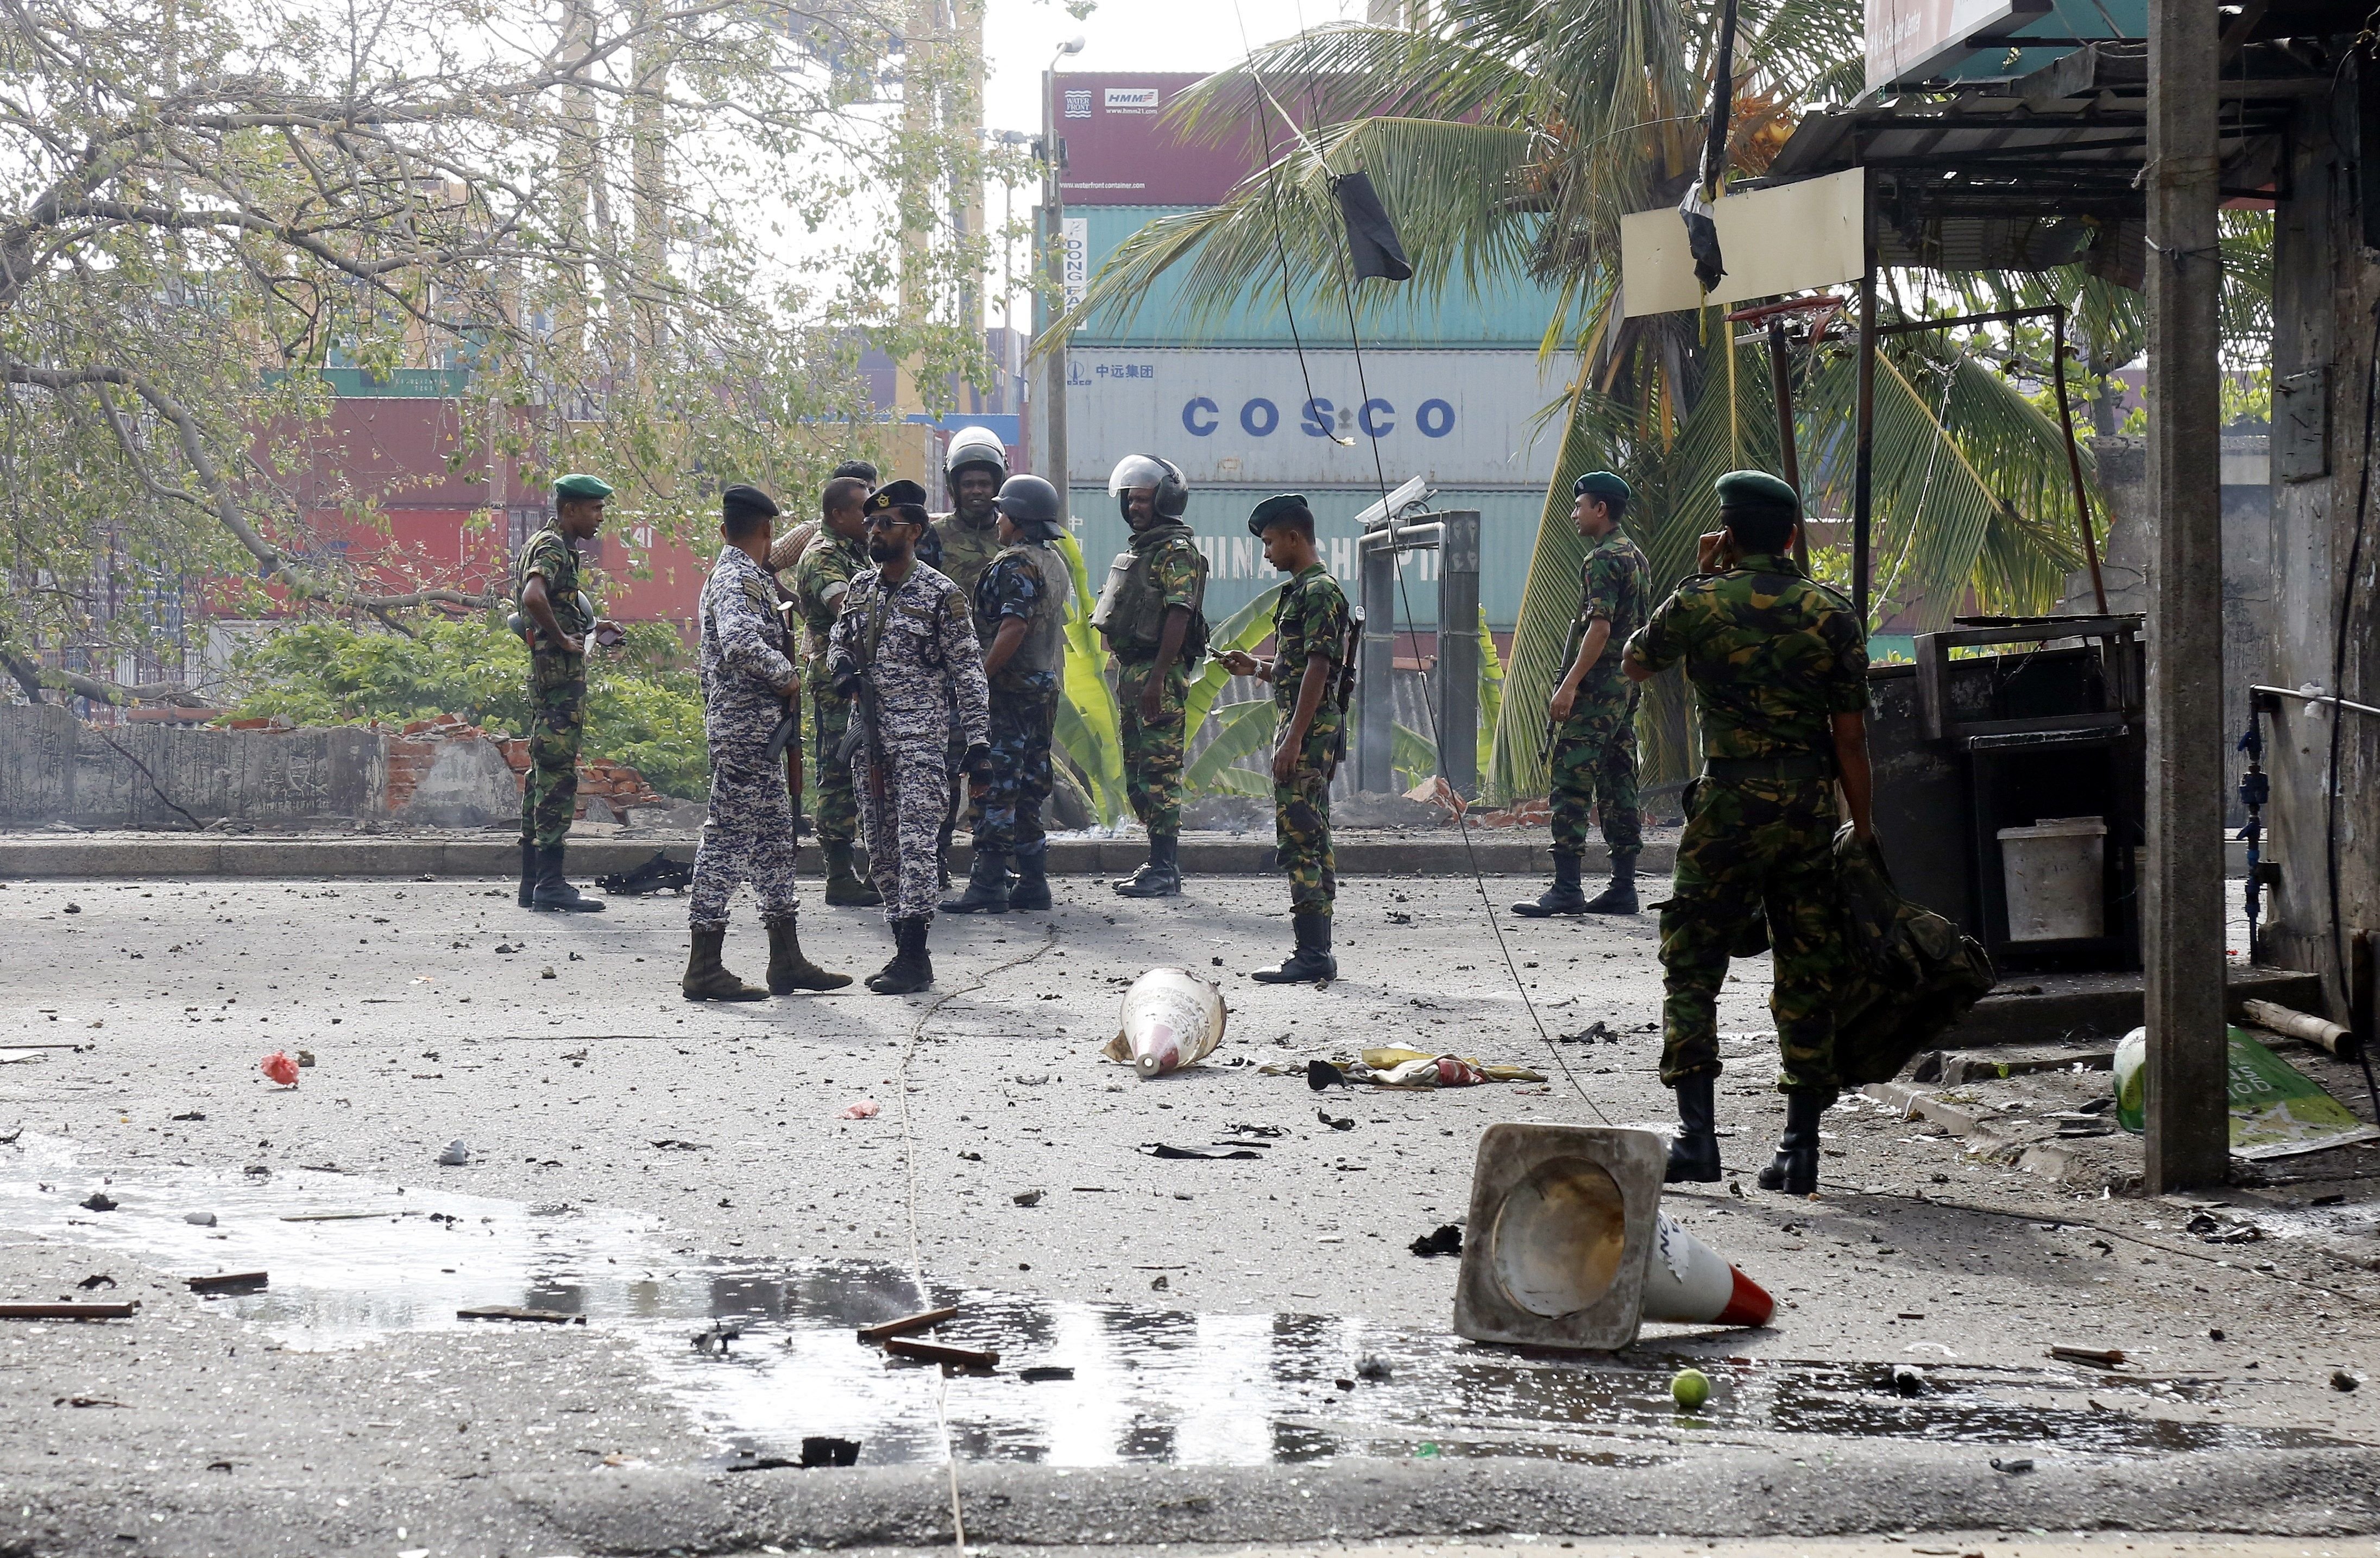 Dos gallegos mueren en el atentado de Sri Lanka